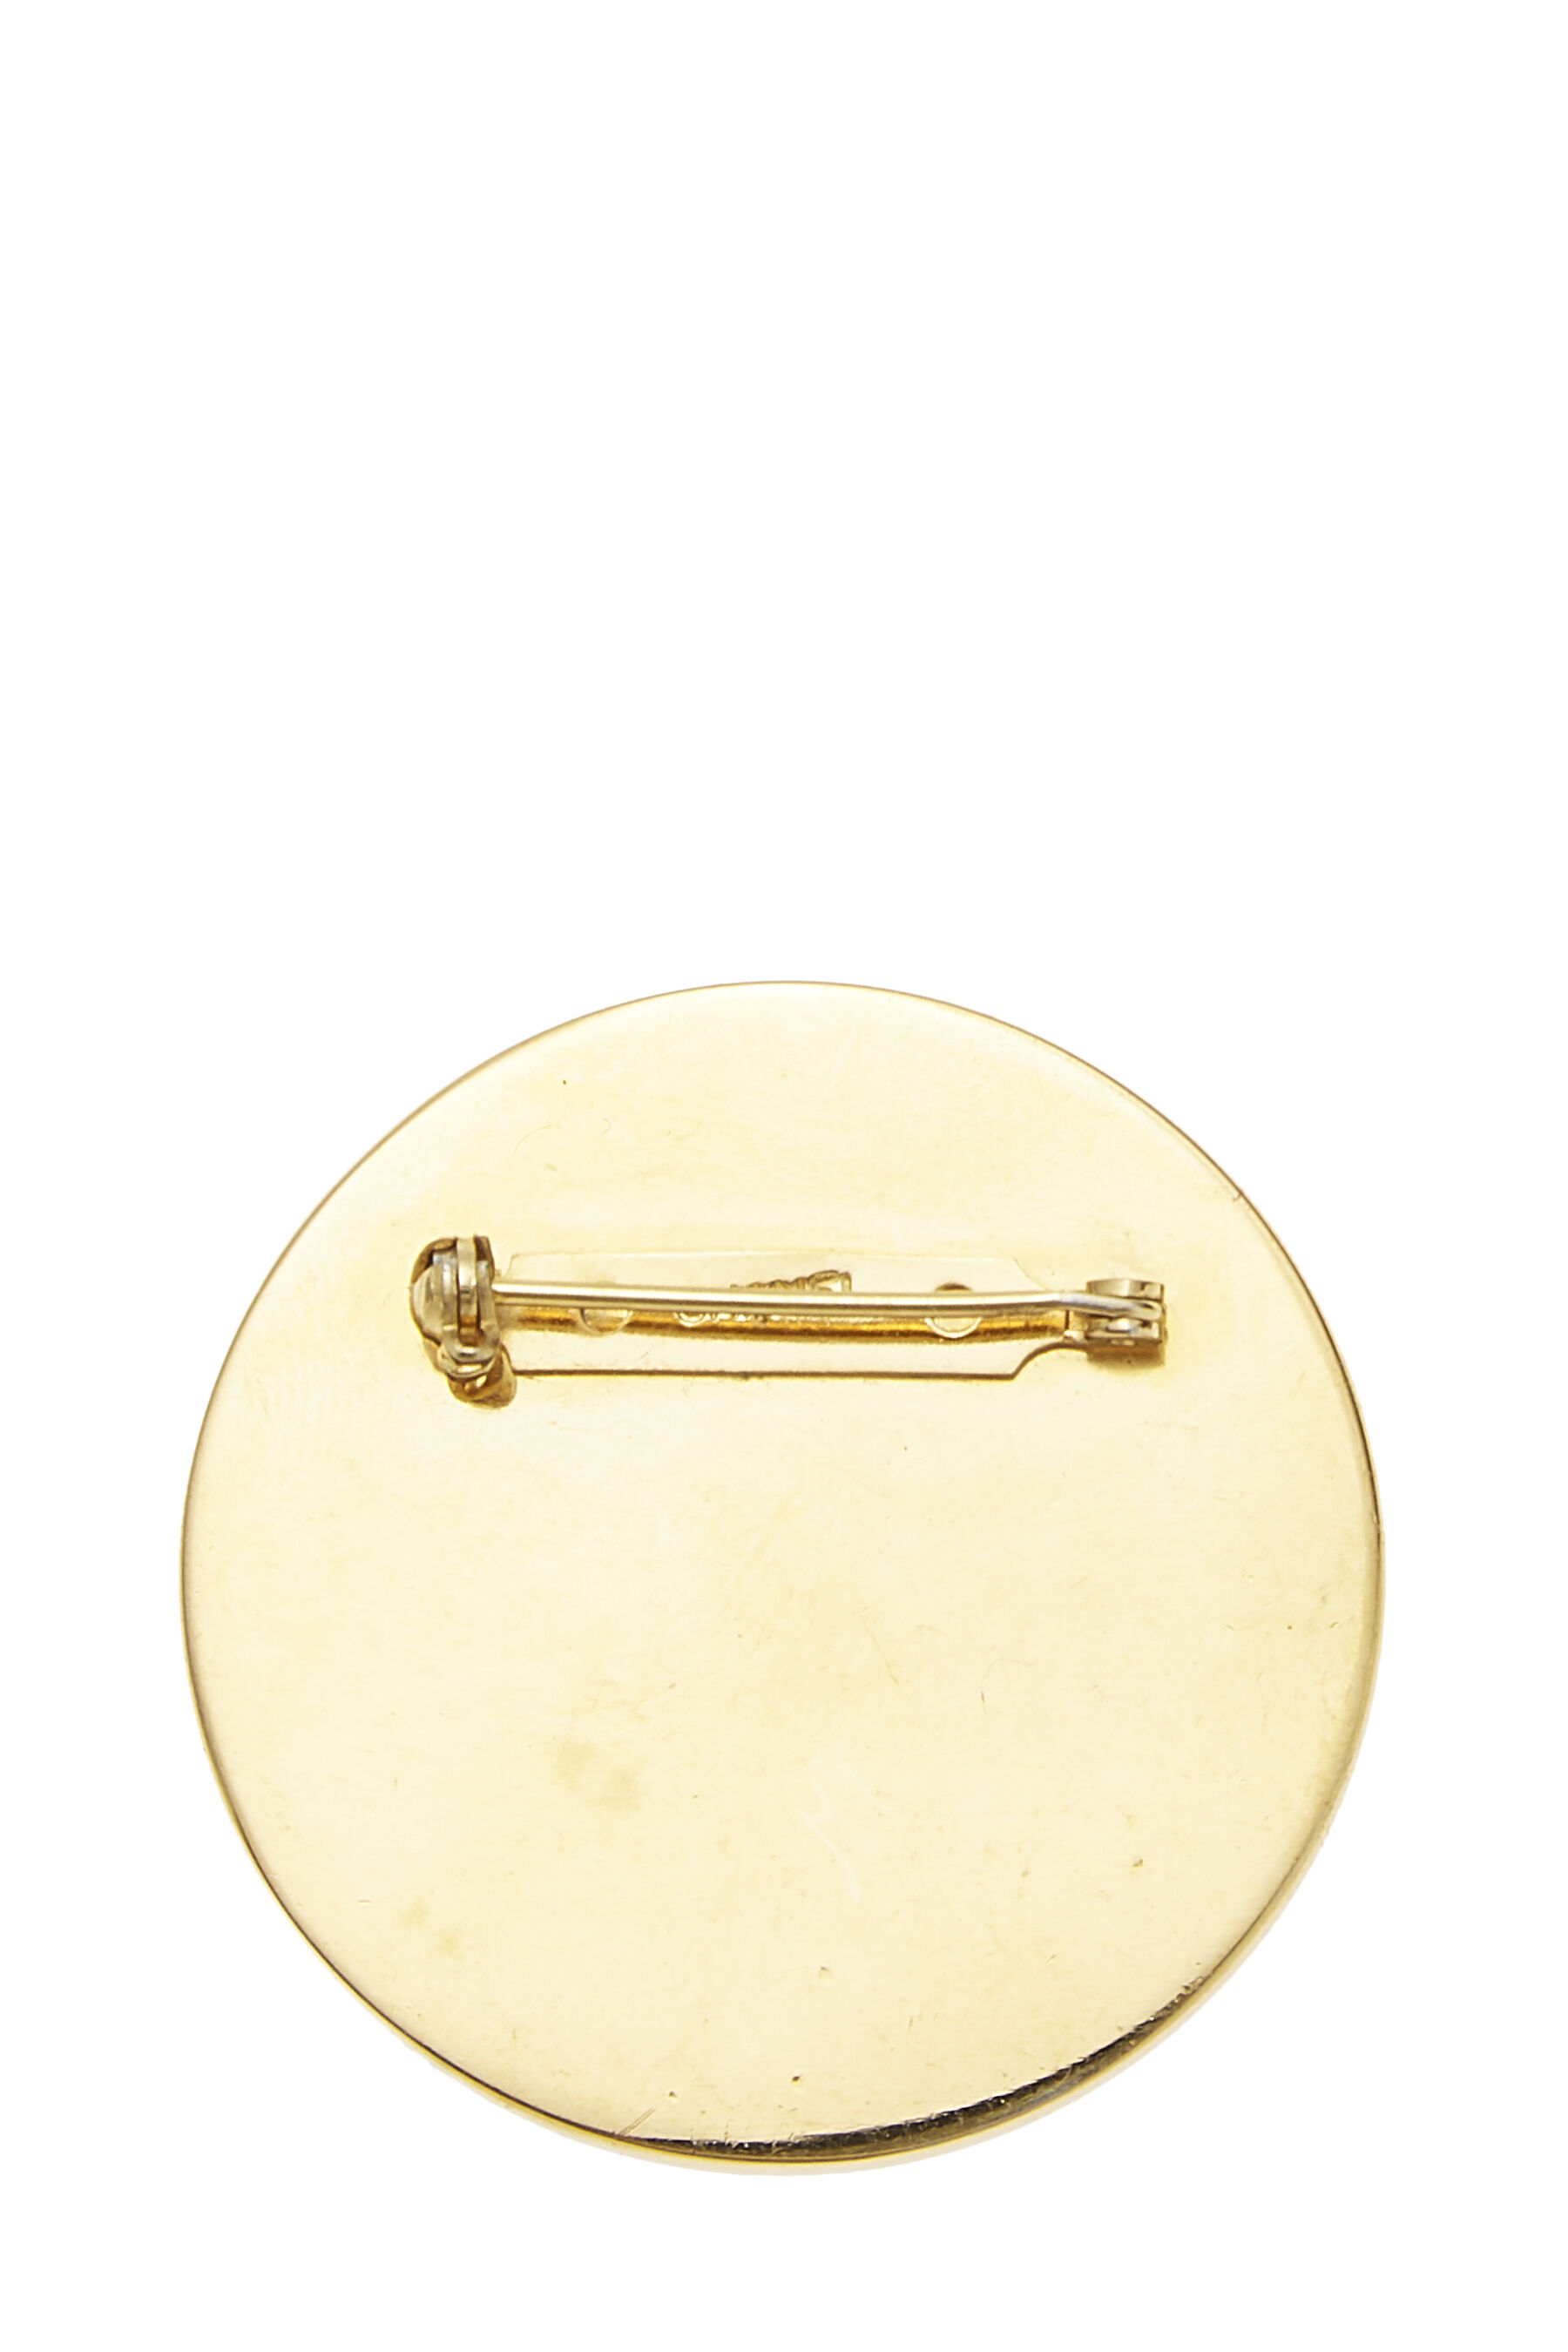 Louis Vuitton 24K Gold Plated Rue Cambon CC Logo Jumbo Brooch Pin 59ck825s